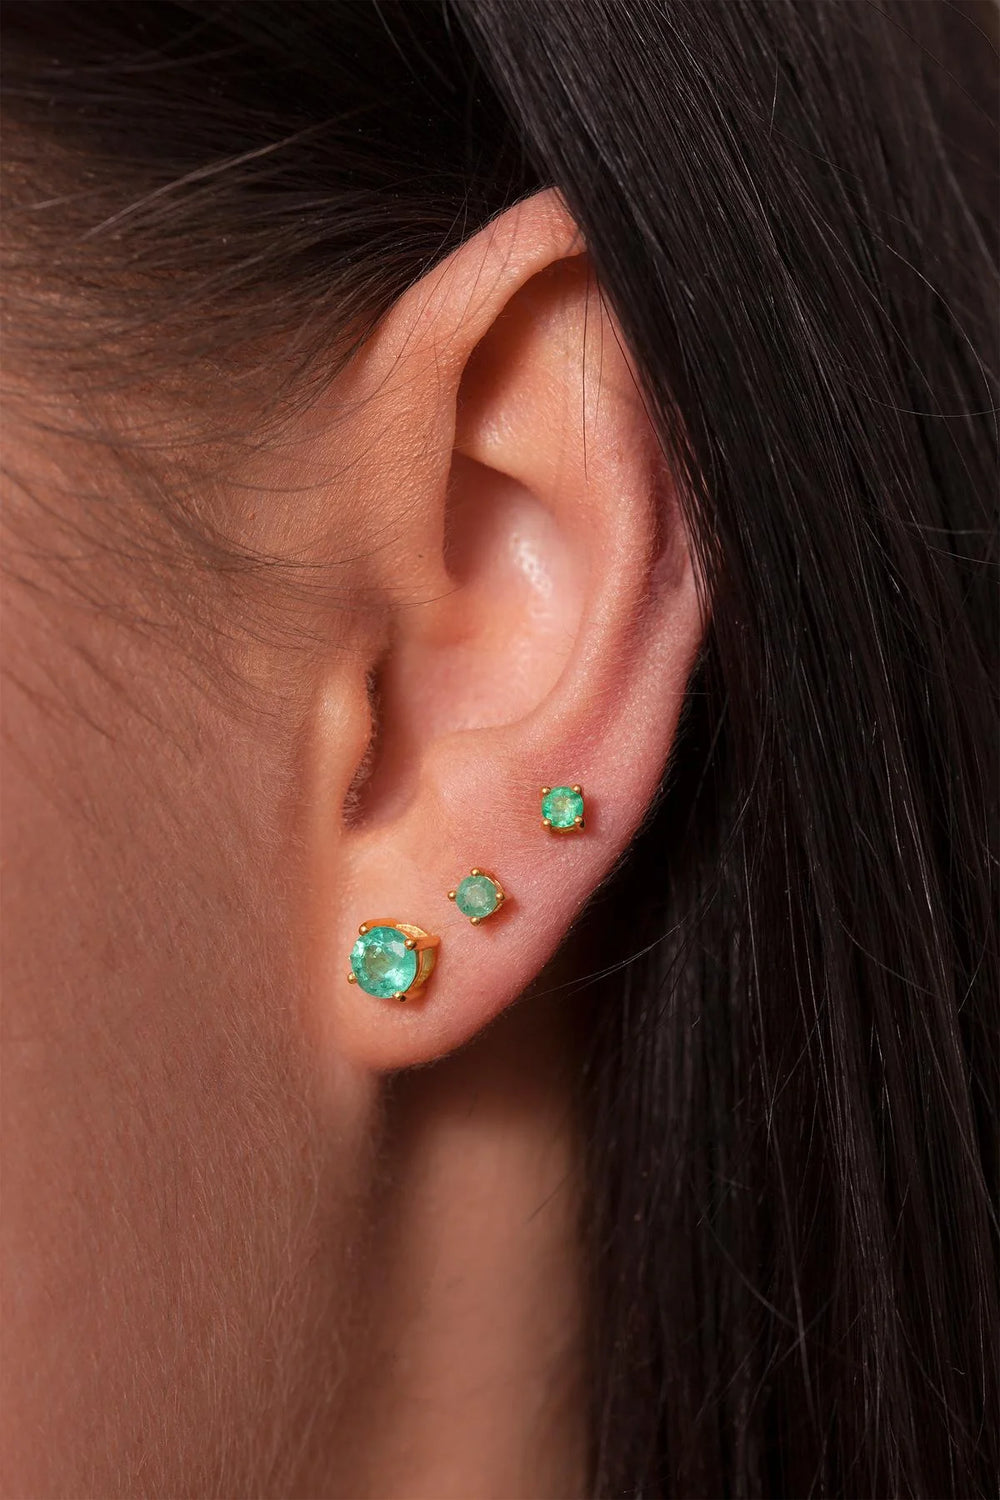 5 mm Zambian Emerald Gold Earrings